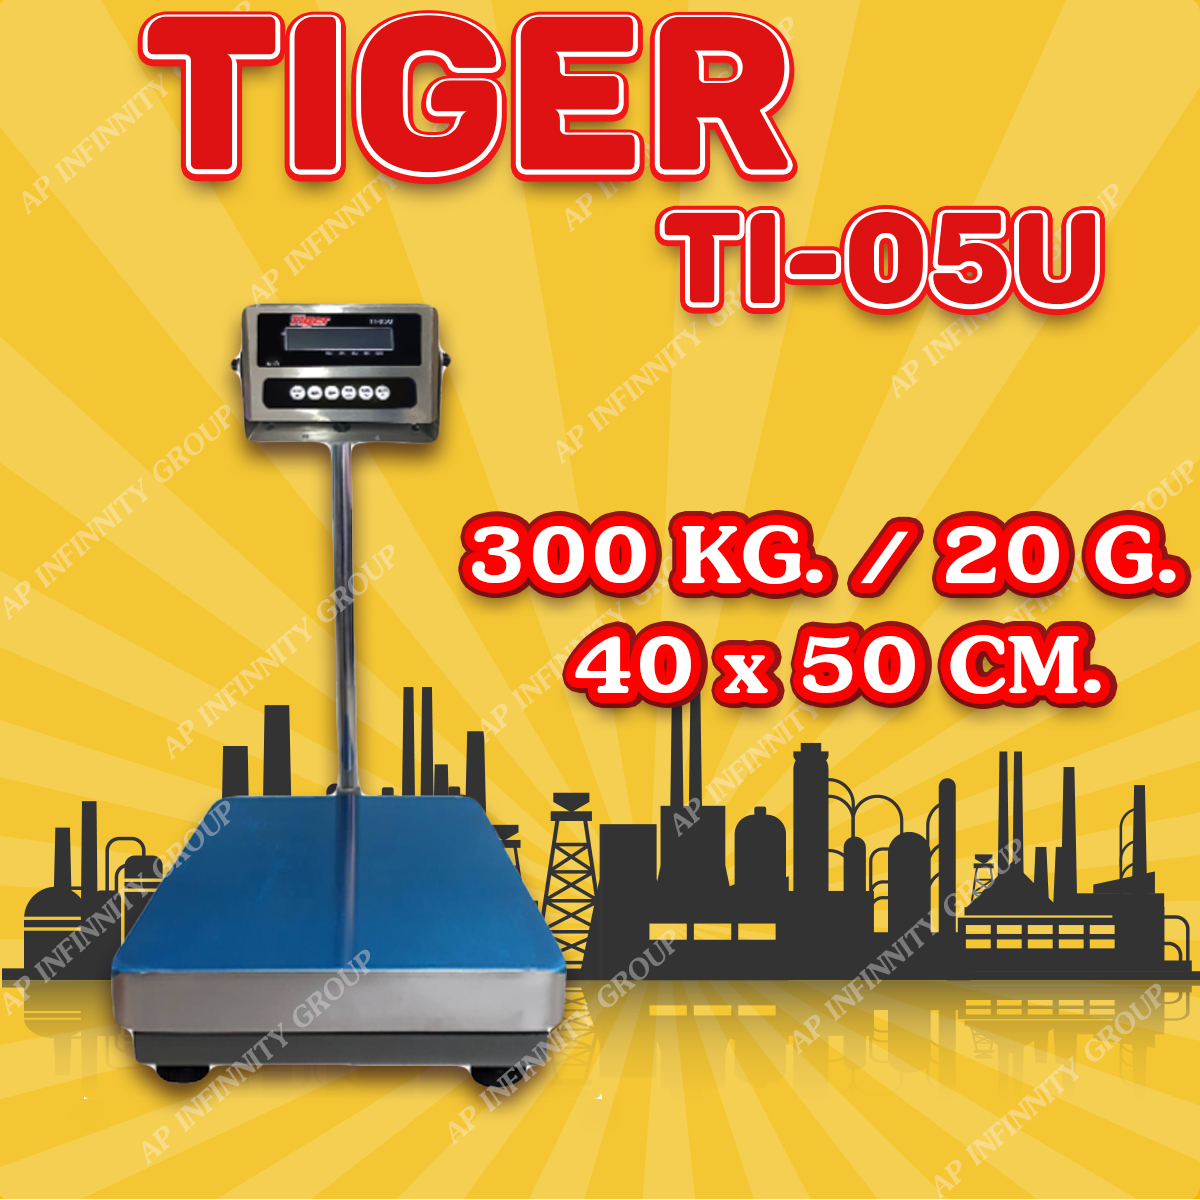 ตาชั่งดิจิตอล เครื่องชั่งดิจิตอล เครื่องชั่งตั้งพื้น 300kg ความละเอียด 20g ยี่ห้อ Tiger รุ่น TI–05U แท่นชั่งขนาดฐาน 40x 50cm มีช่อง USB สำหรับการบันทึกข้อมูลได้ รูปที่ 1